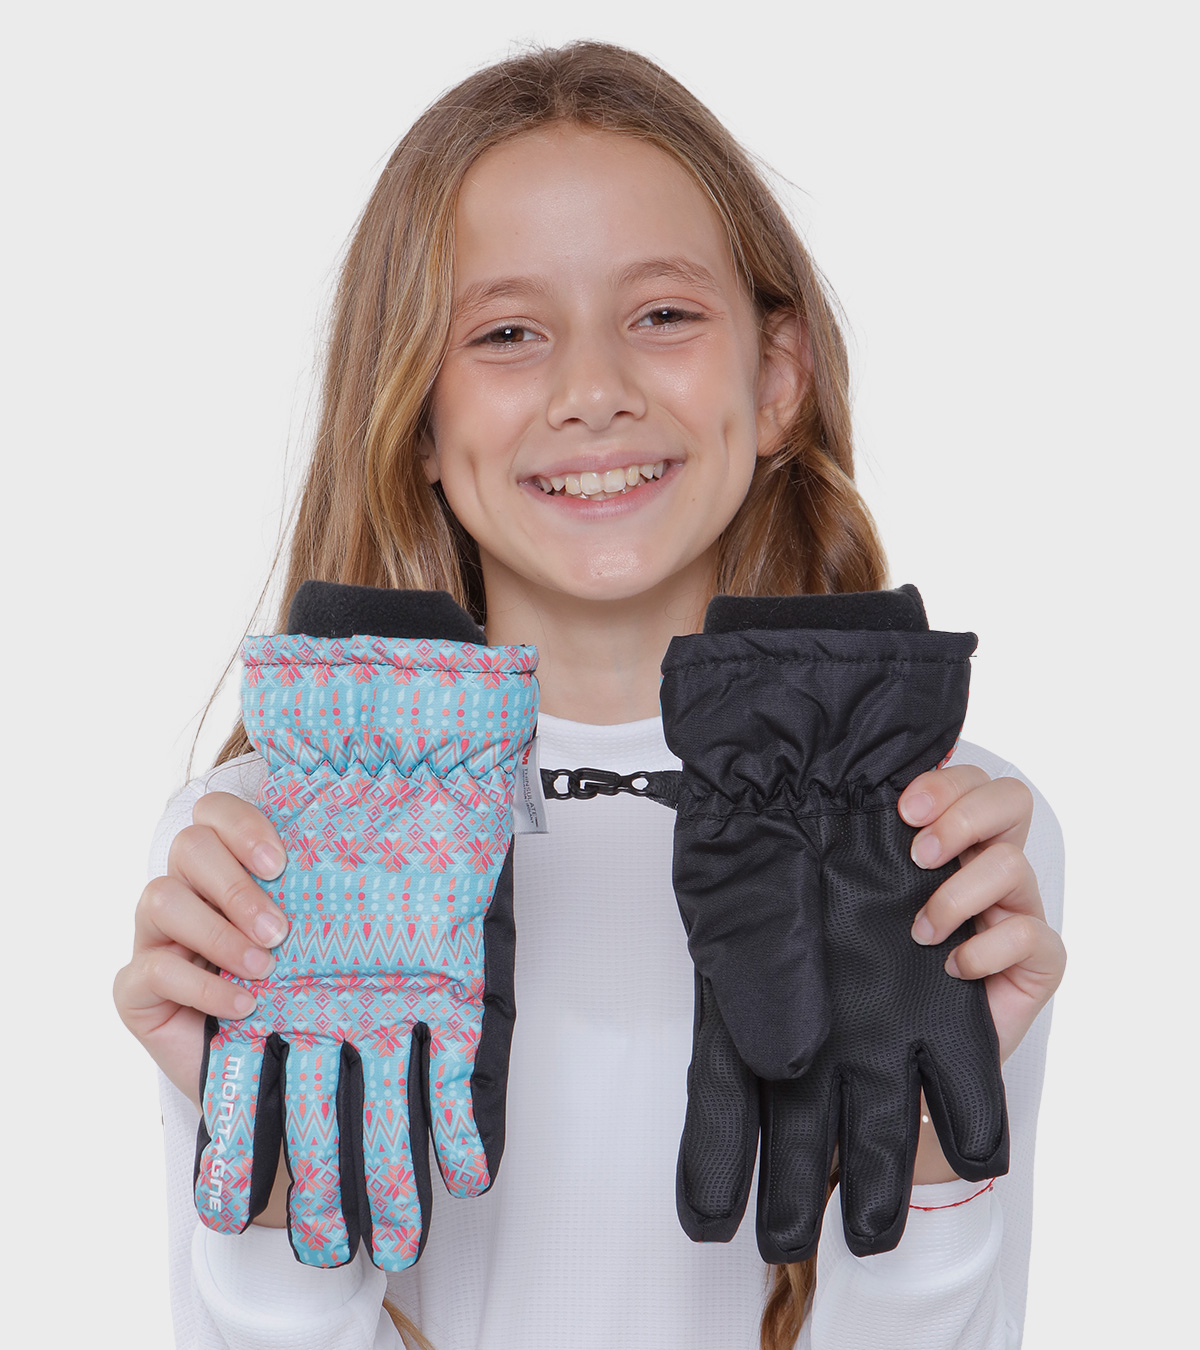 Montagne: guantes, guante, guantes de, guantes para, guantes